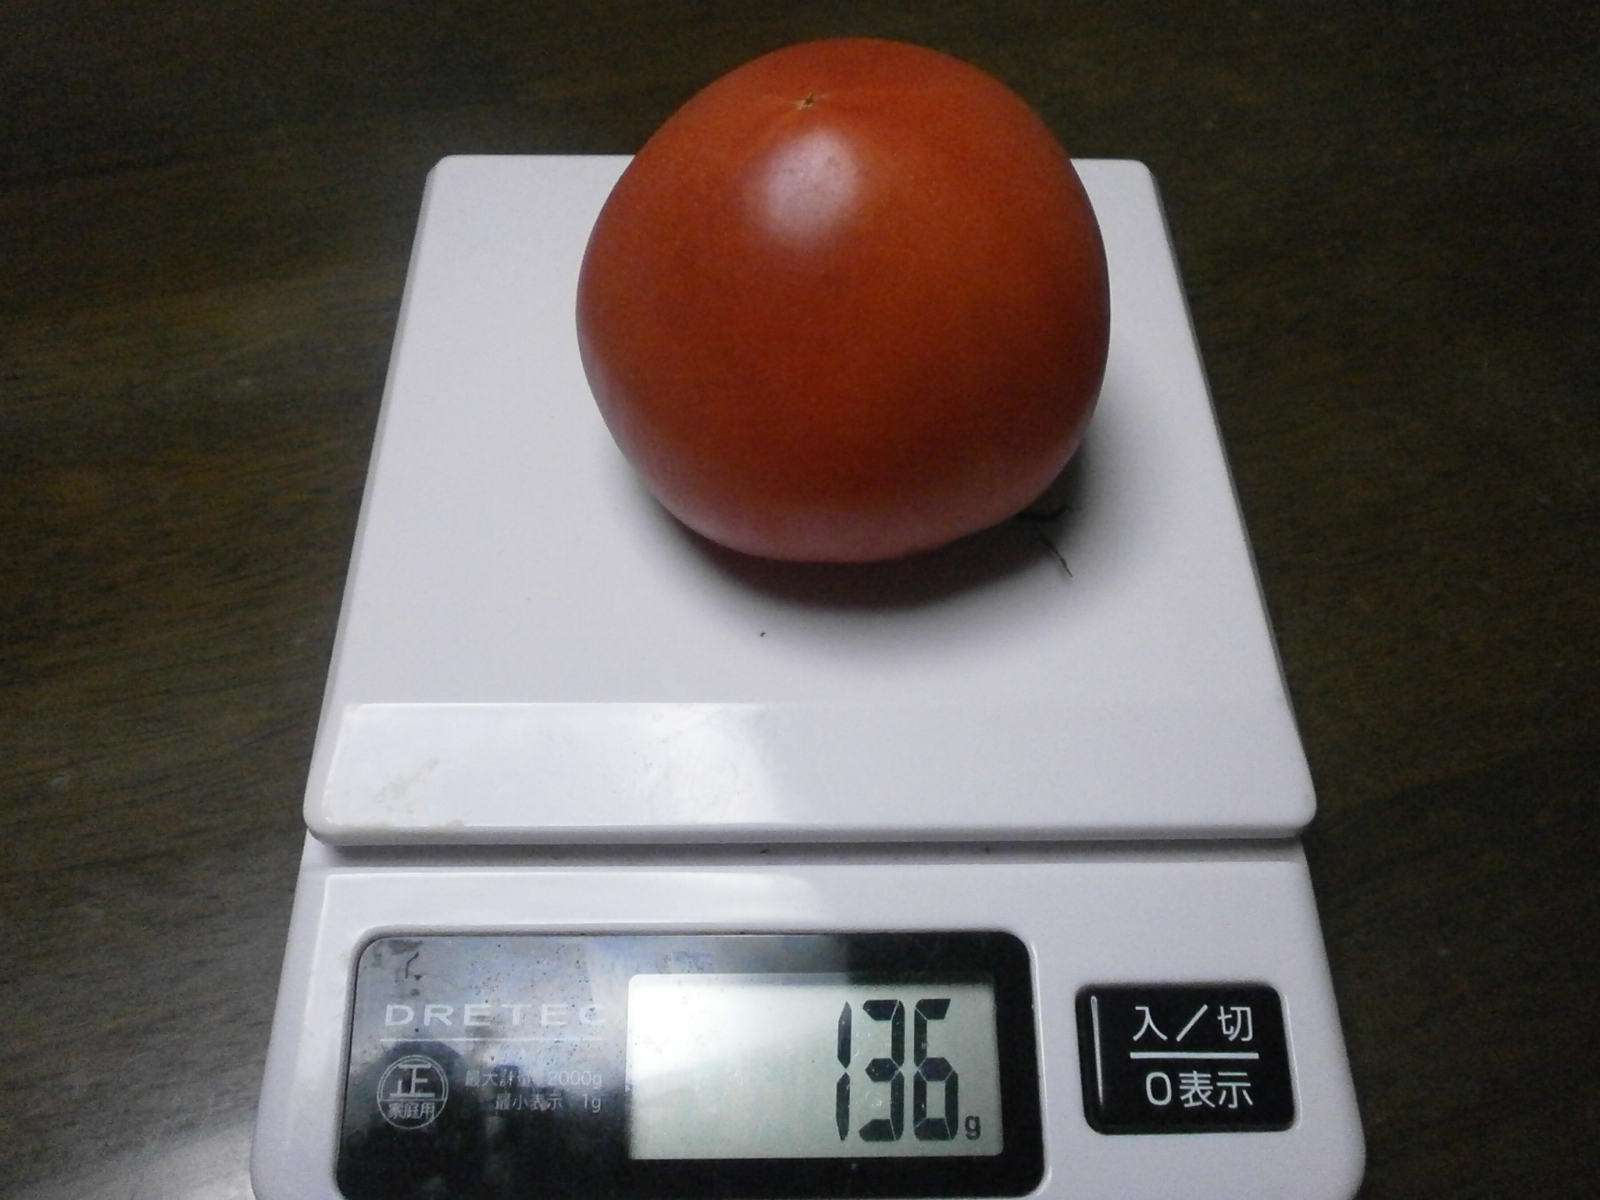 Tomato (141 g/ 136 g/121 g / 120 g)